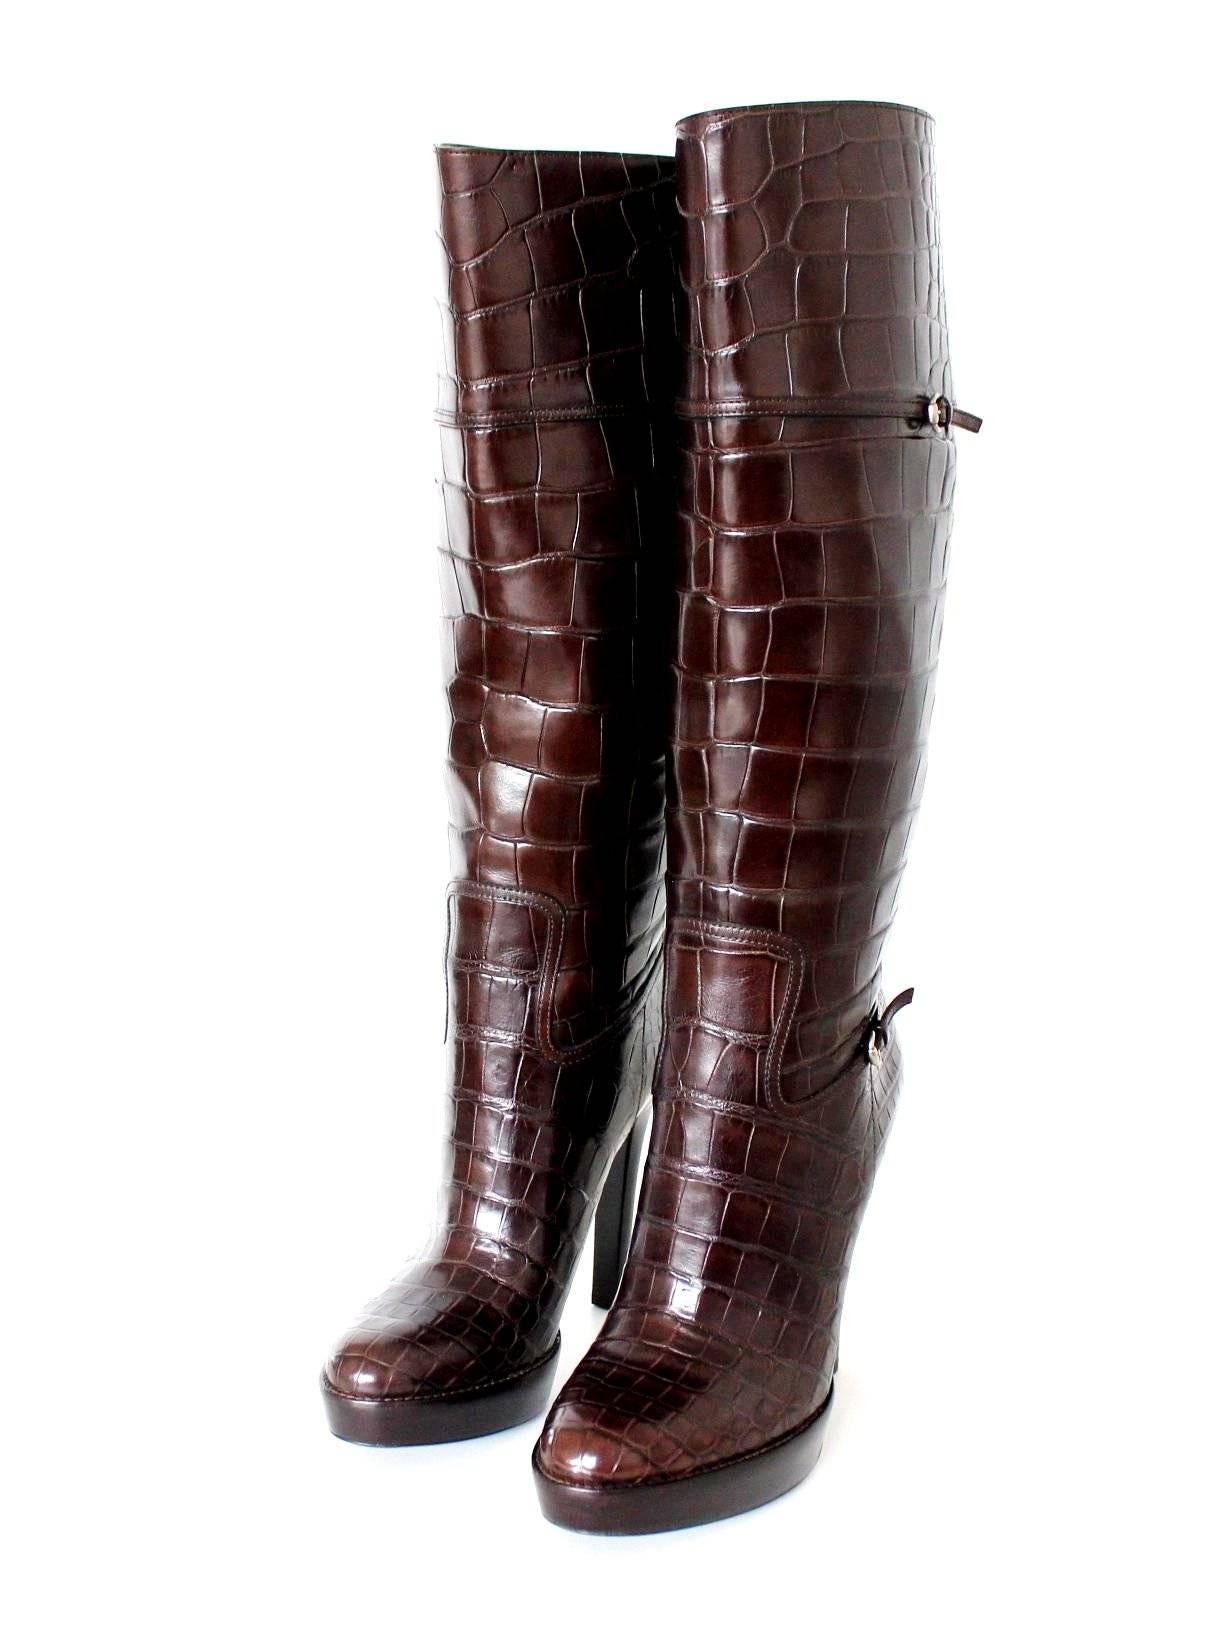 NEU Gucci Exotische braune extra hohe Alligatorhaut High Heels Stiefel 17899 $ 41 im Angebot 2